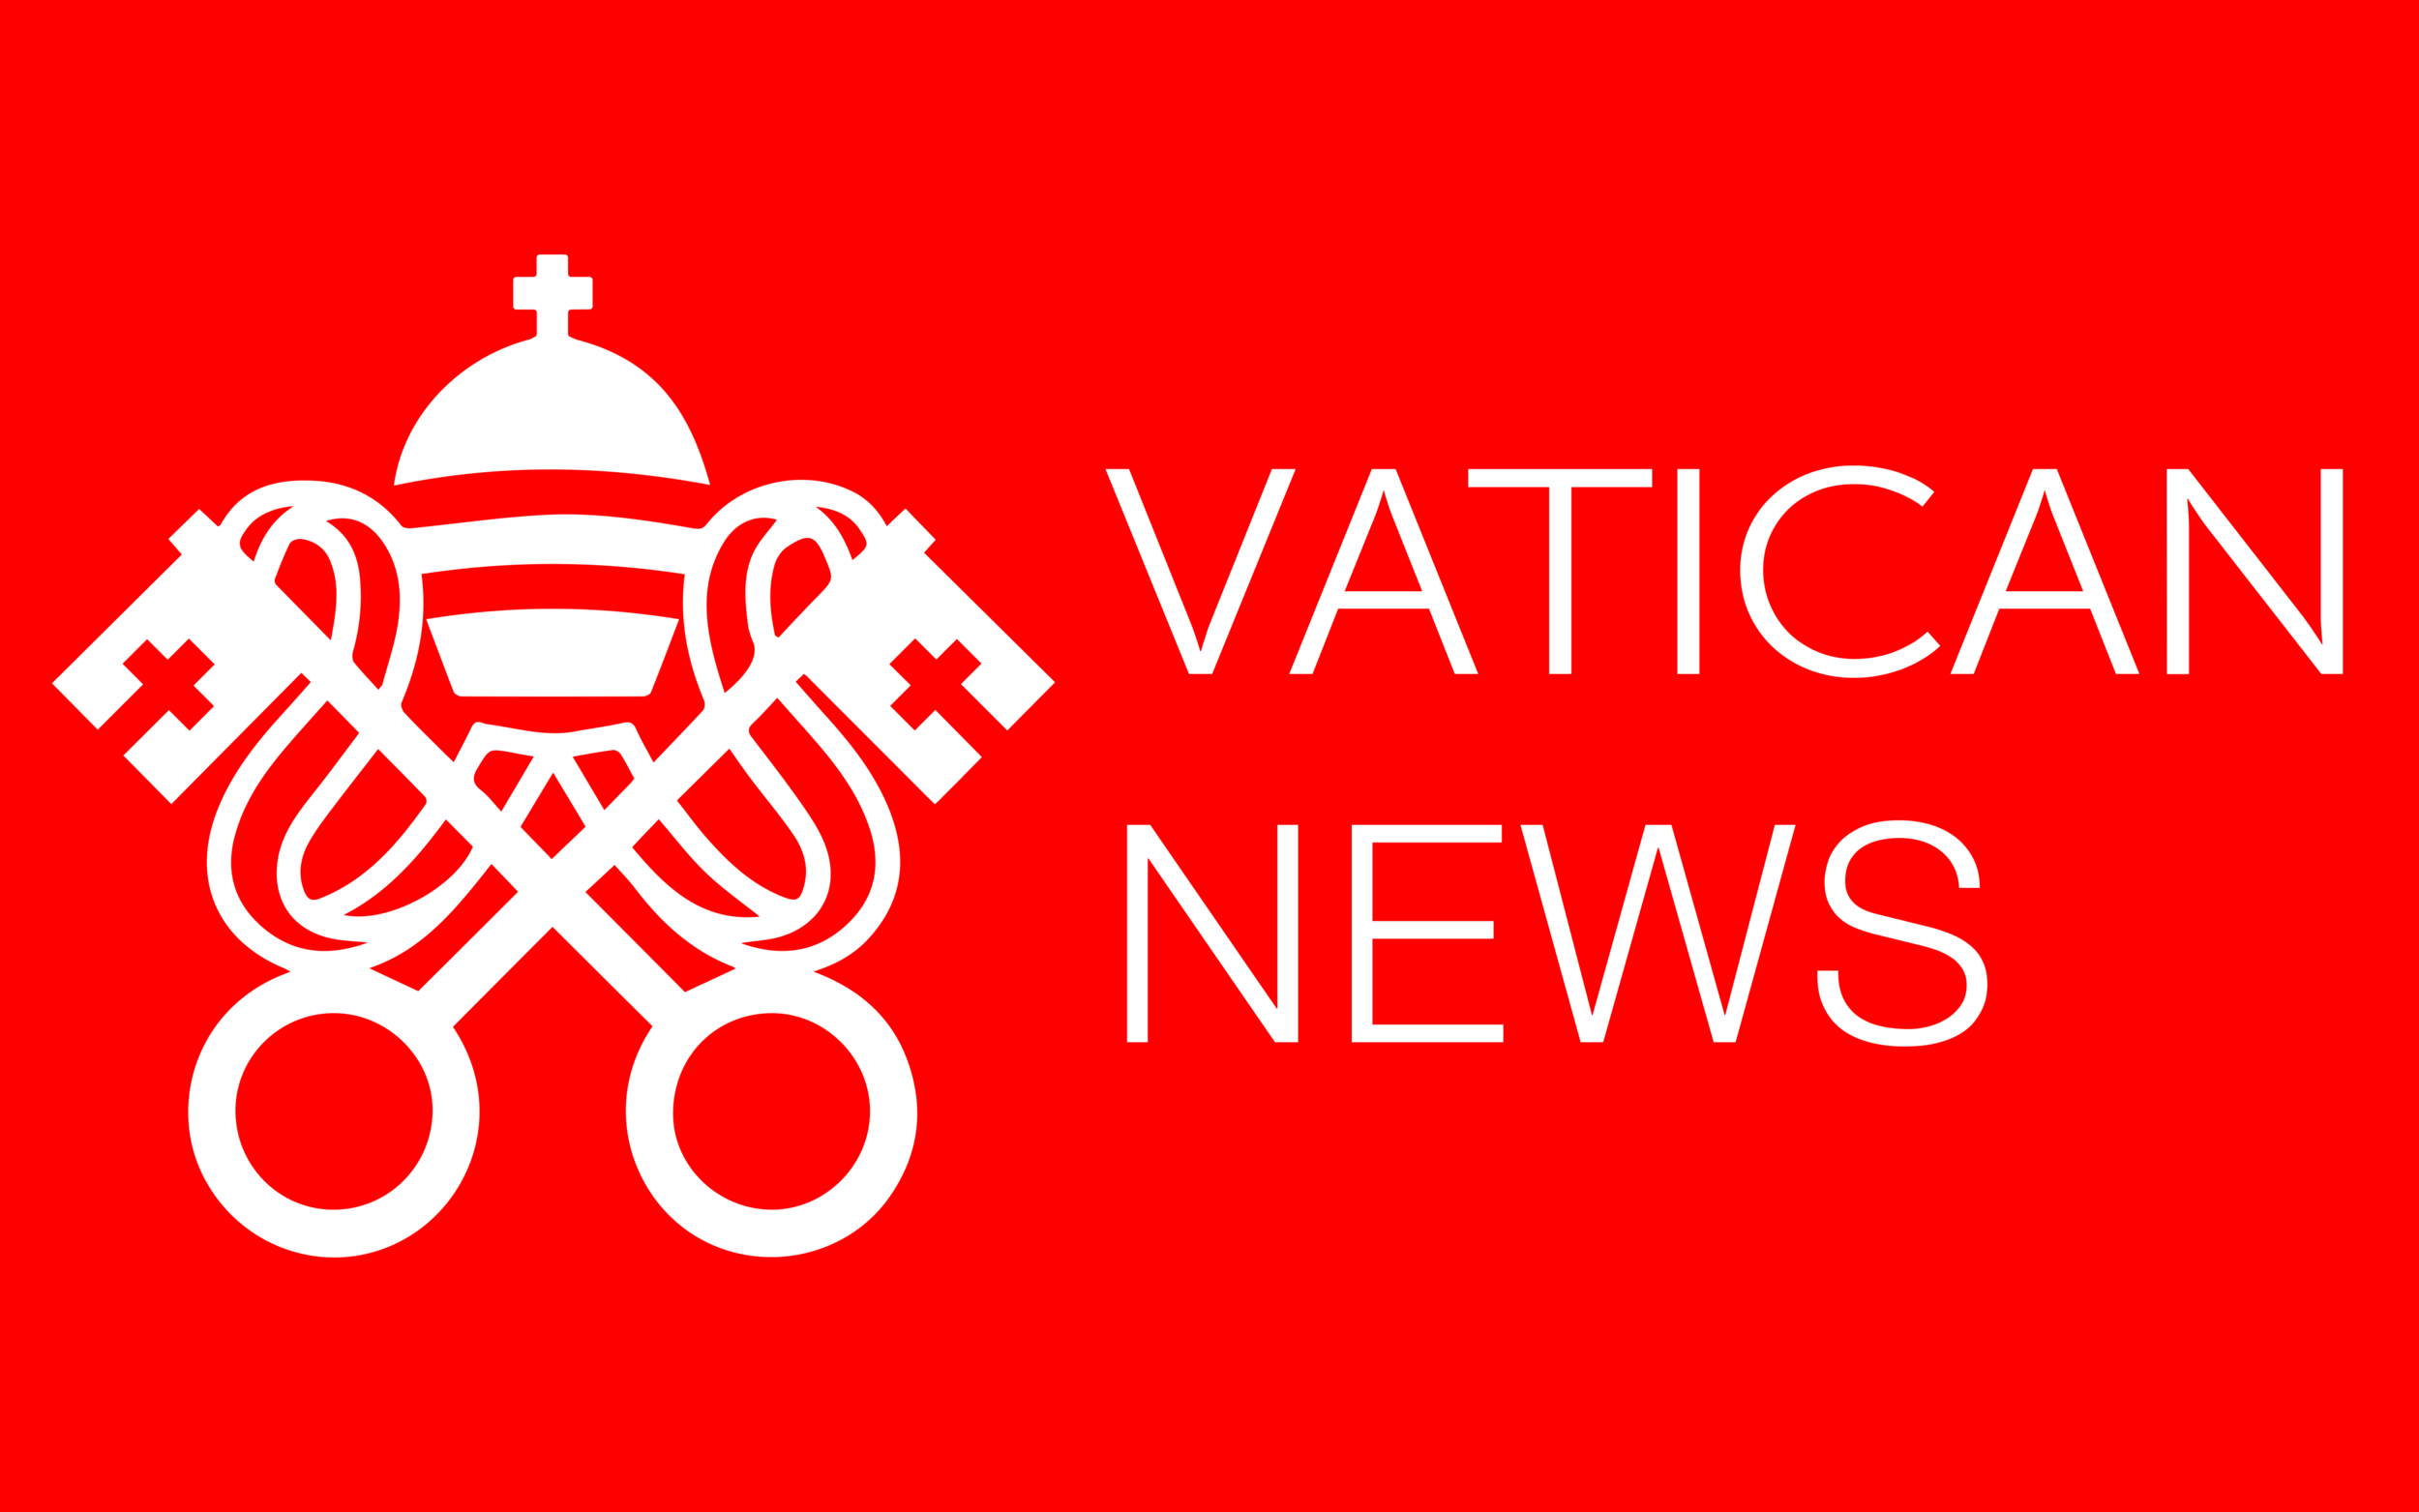 VATICAN-NEWS-LOGO.png